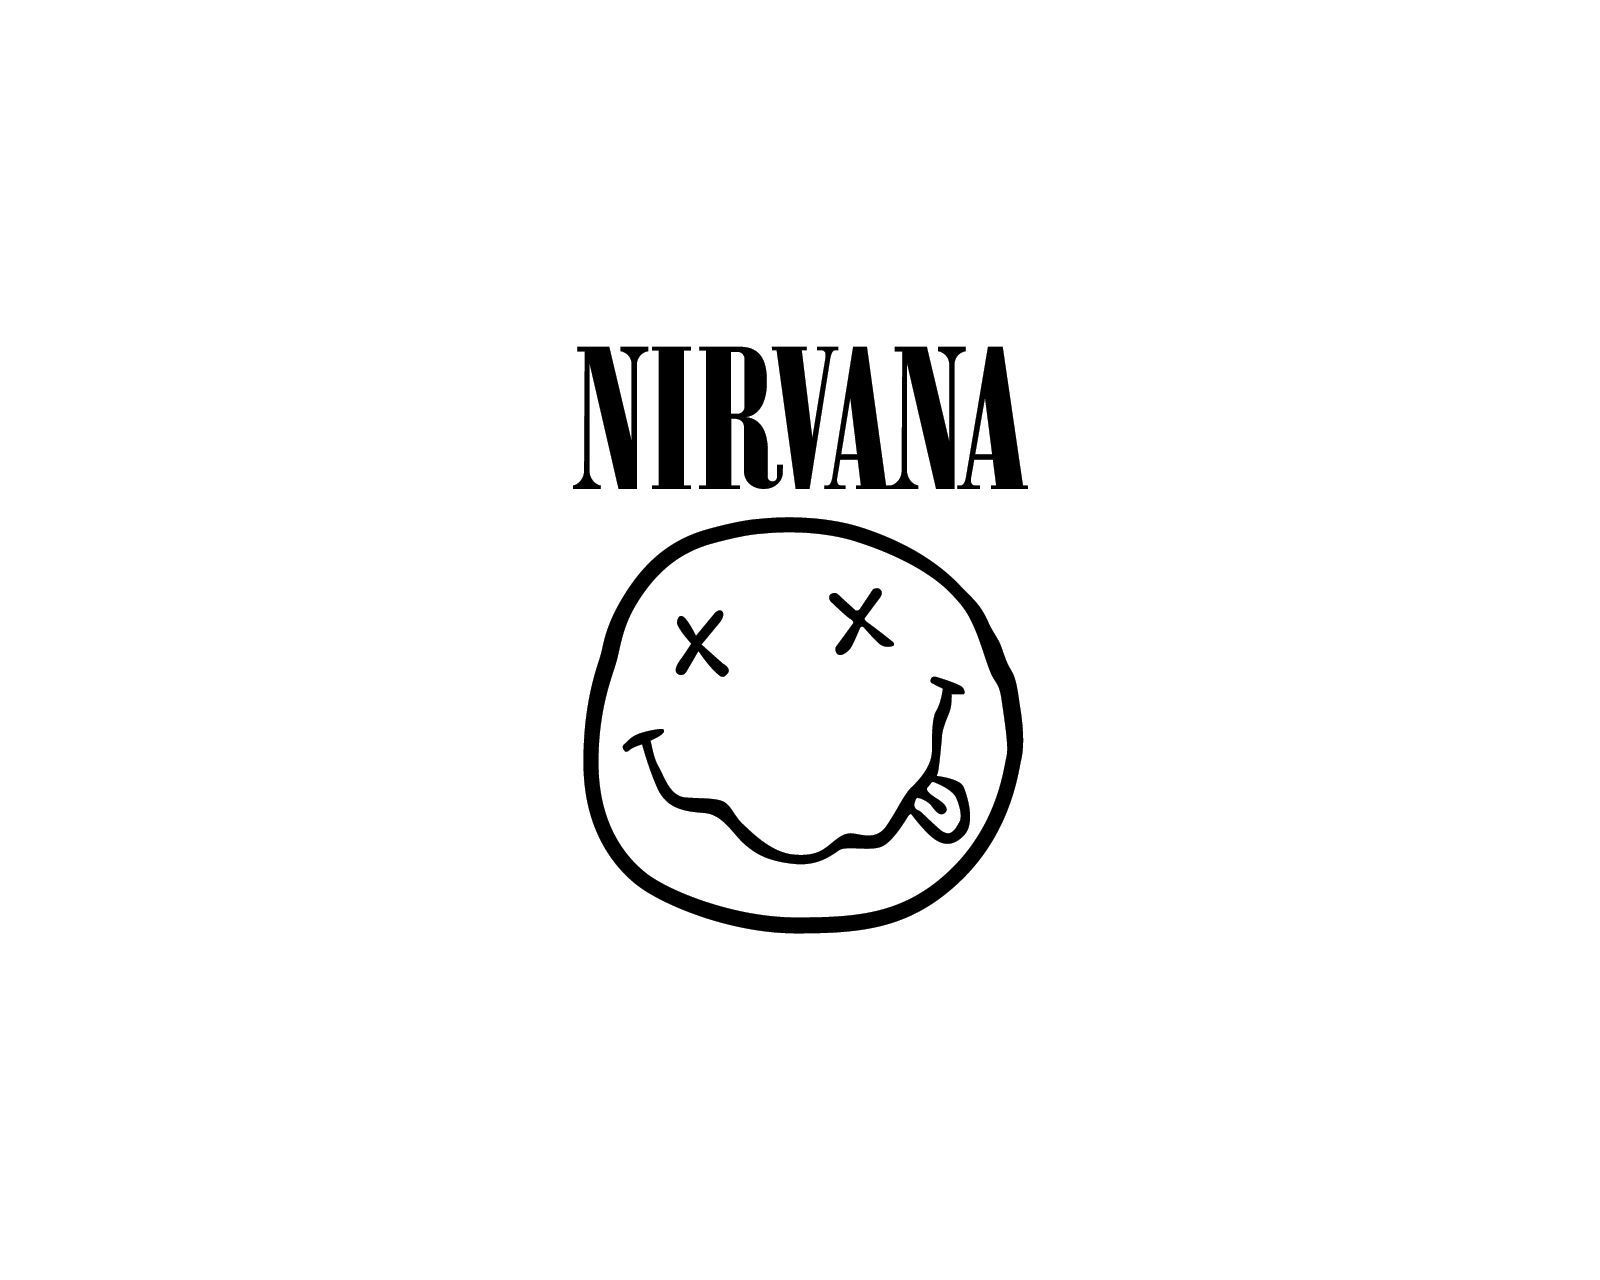 Nirvana Computer Wallpapers, Desktop Backgrounds | 1600x1280 | ID ...